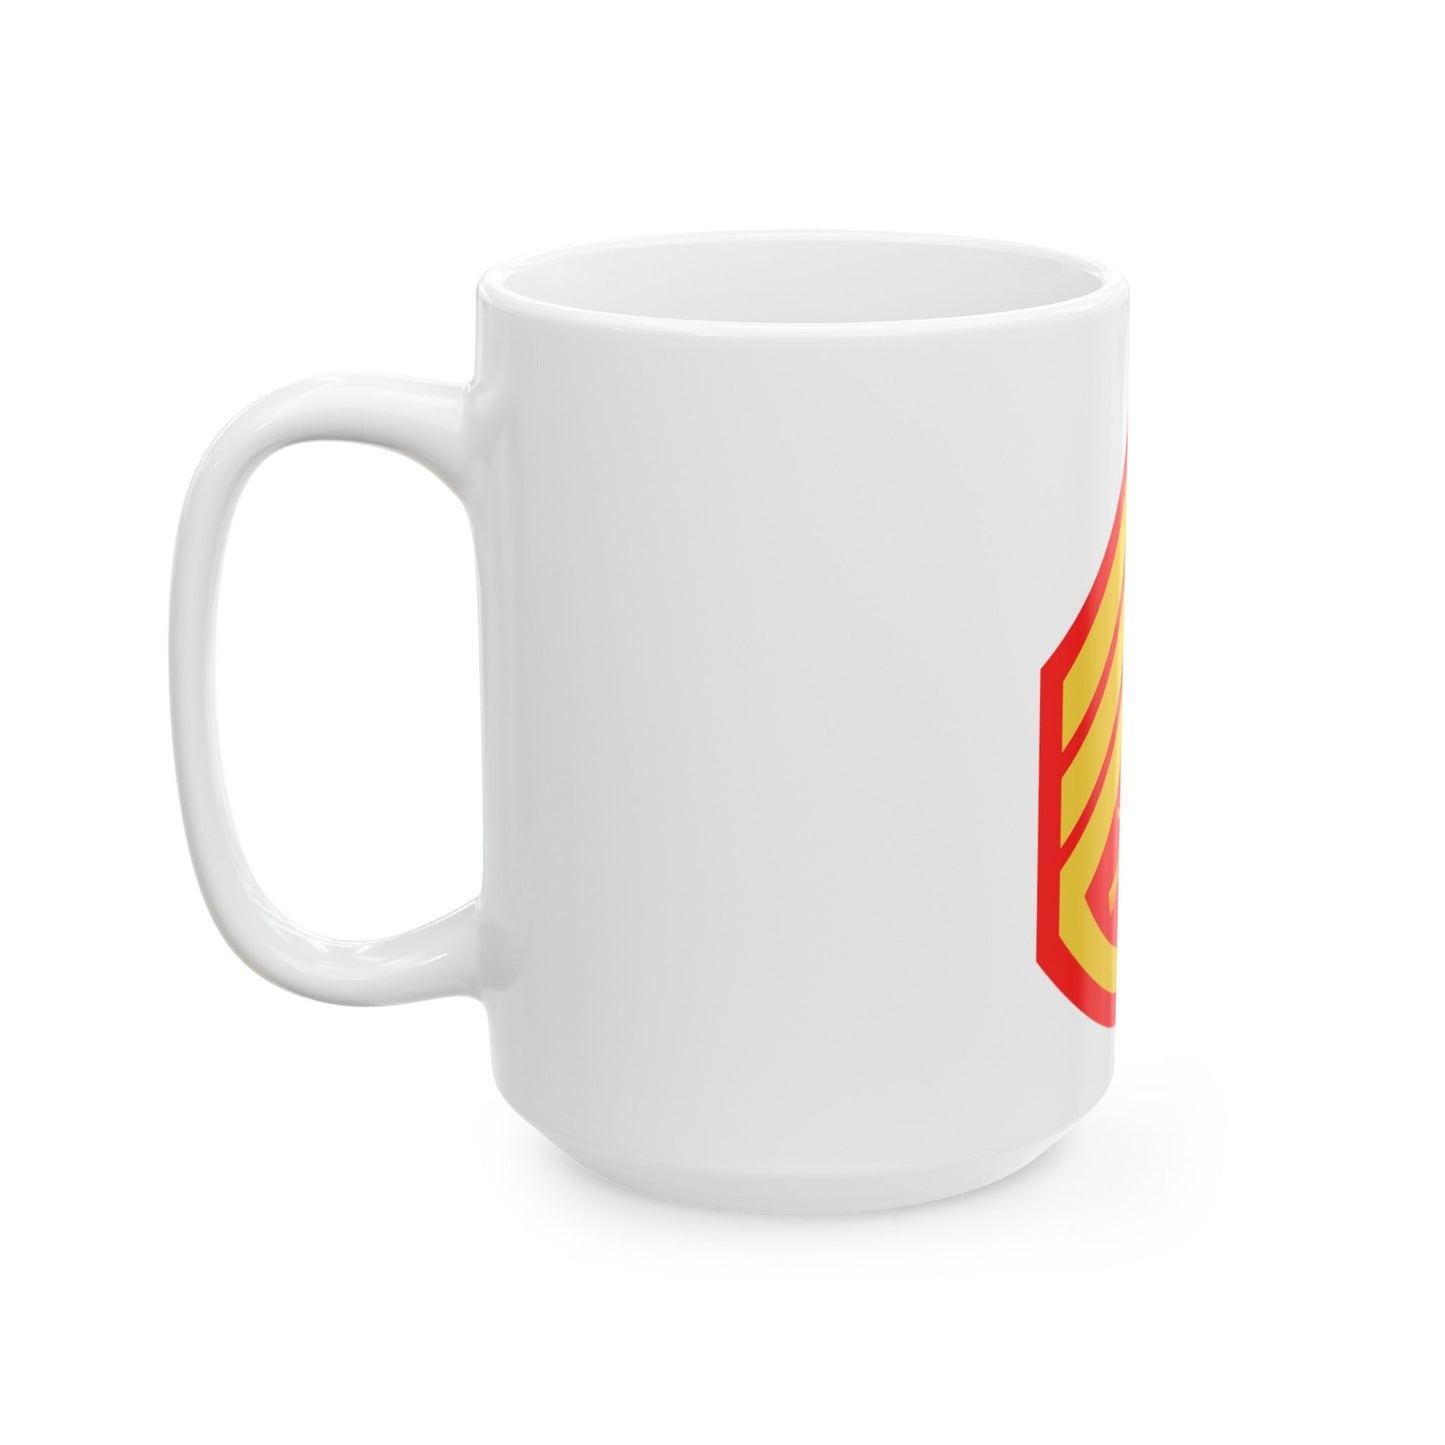 USMC E6 (USMC) White Coffee Mug